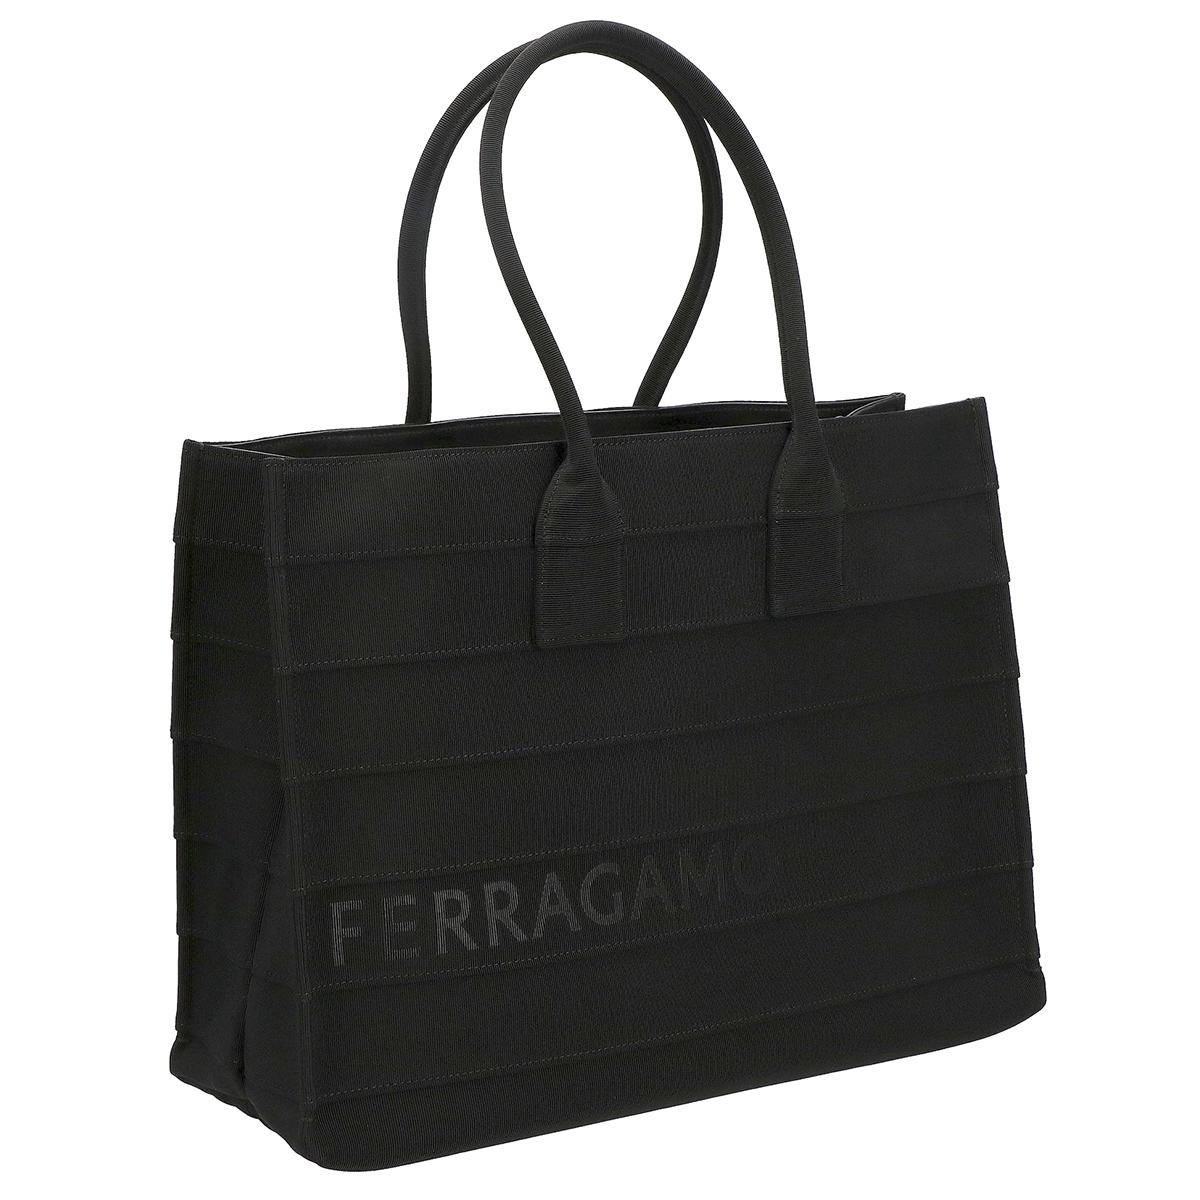 フェラガモ Ferragamo バッグ トートバッグ ポーチ付き 213985 765607 レディース ブラック トート 人気 ブランド 使いやすい プレゼント